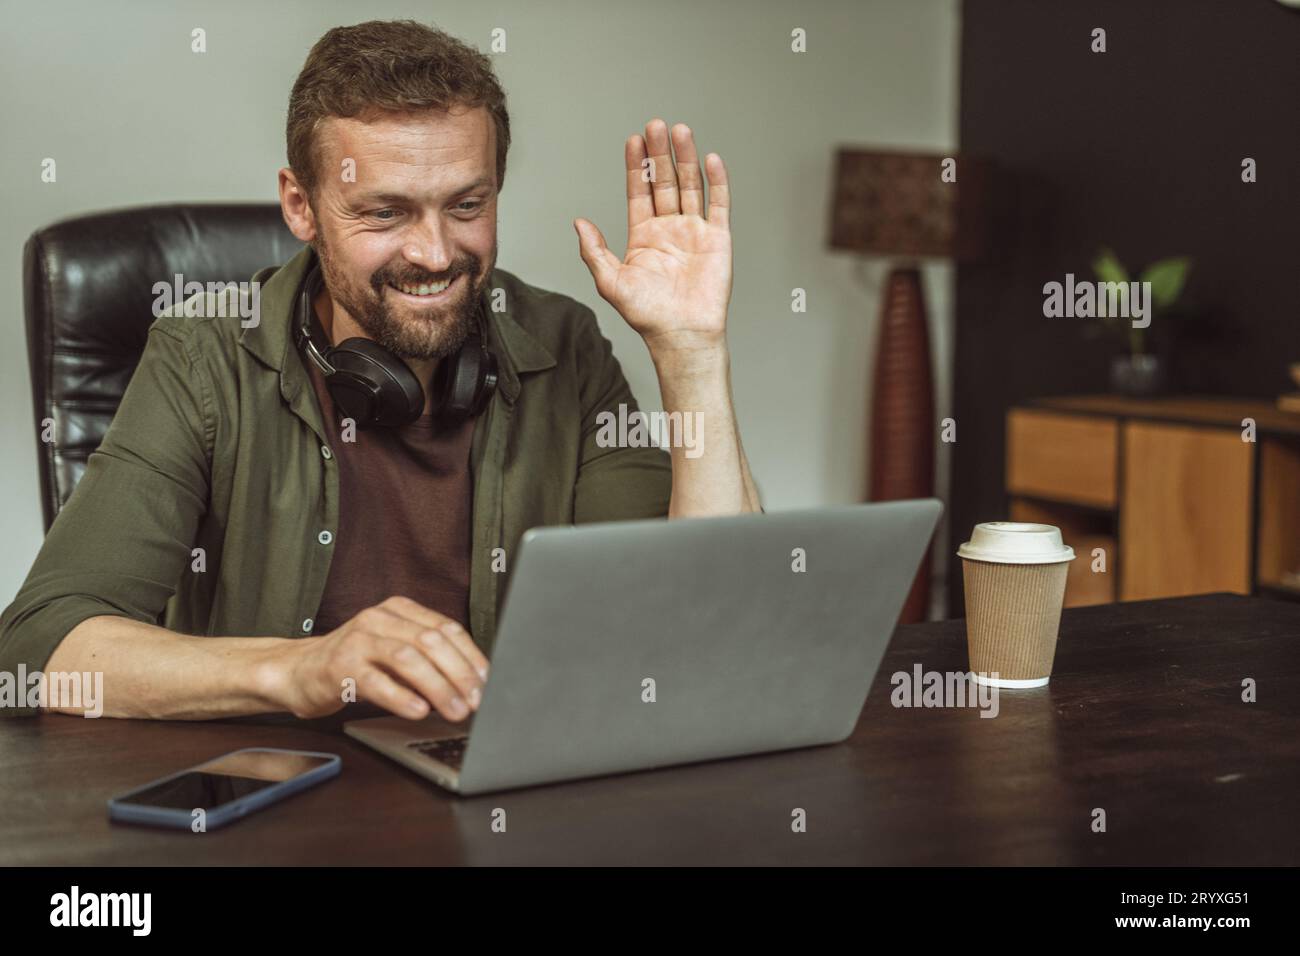 Homme professionnel s'engageant dans la réunion en ligne dans l'environnement de bureau loft. Avec geste amical, salue quelqu'un virtuellement, demonati Banque D'Images